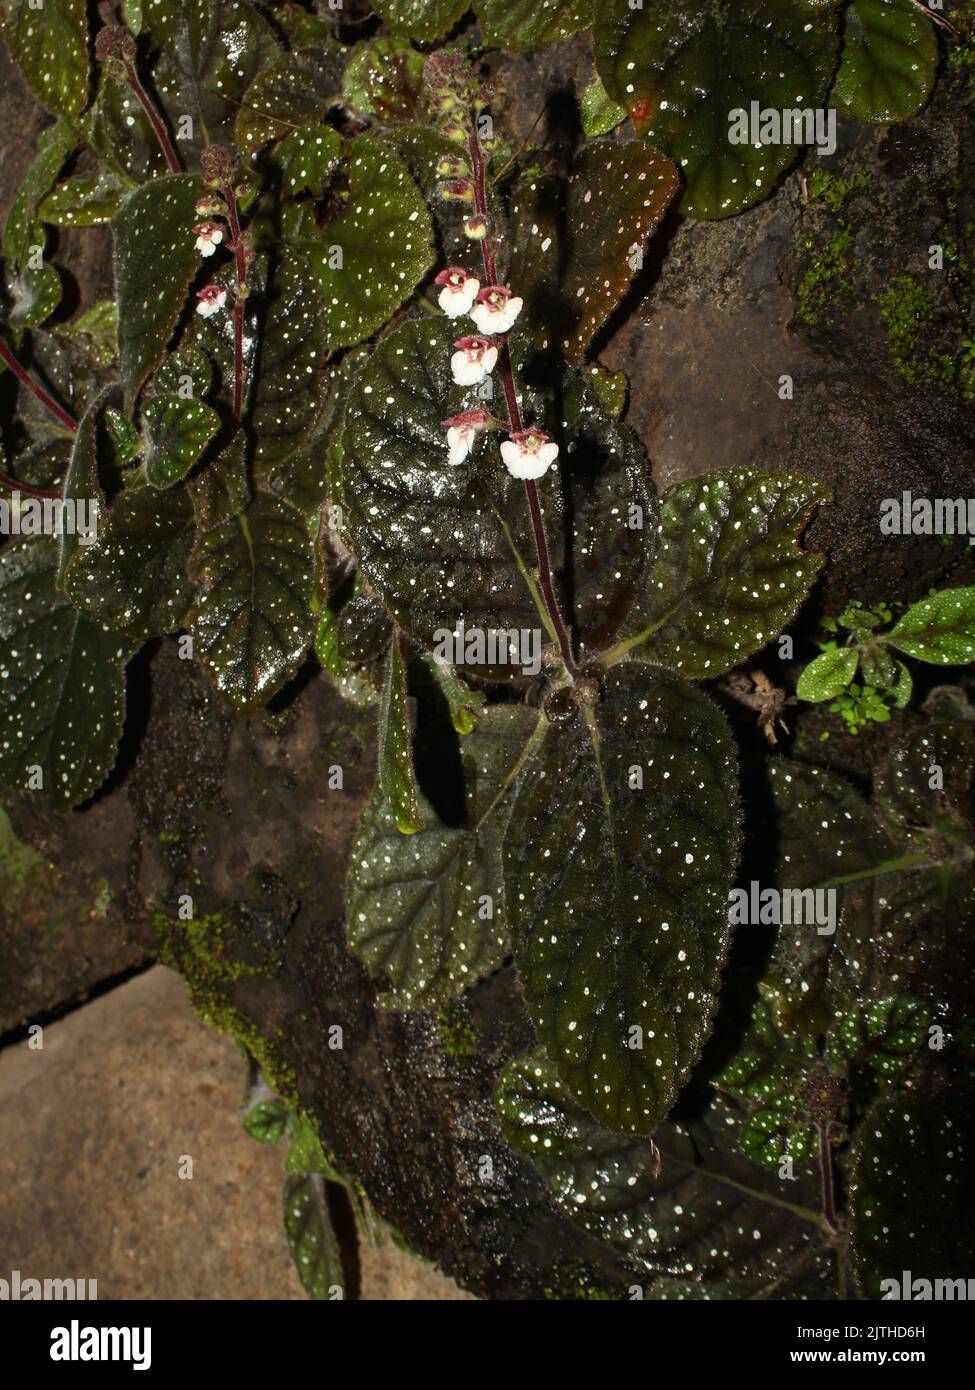 Wild gesneriad Gloxinia erinoides Stock Photo